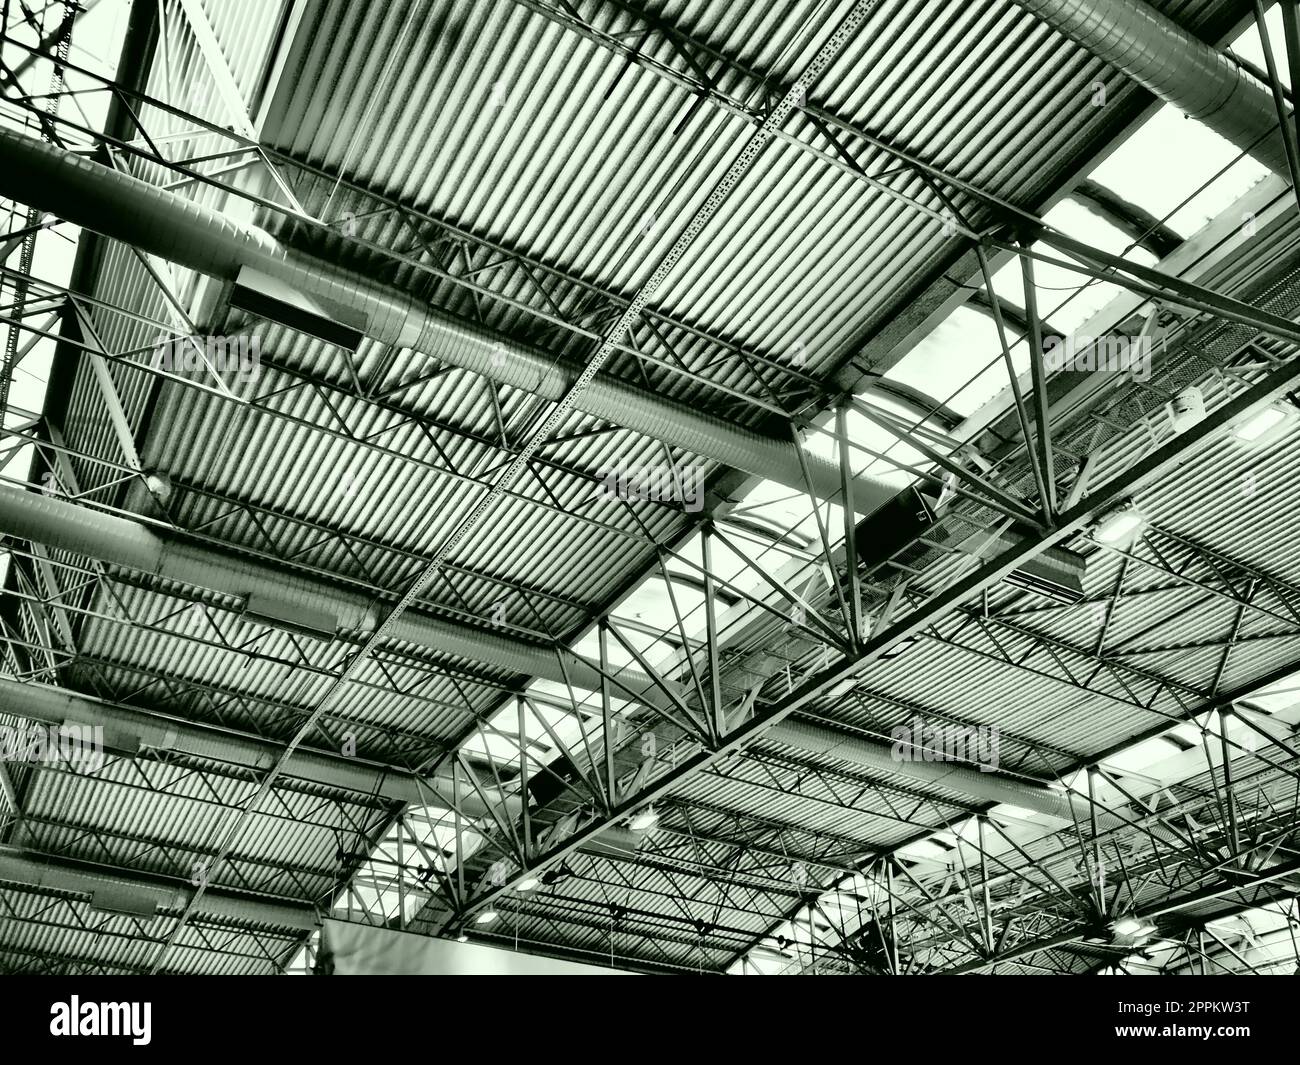 Il tetto di un hangar, di una sala di produzione o di un palazzetto dello sport. Strutture metalliche, travi, elementi di supporto. Sistemi di ventilazione in grandi sale e stanze. Lucernari. Interni industriali. Foto Stock